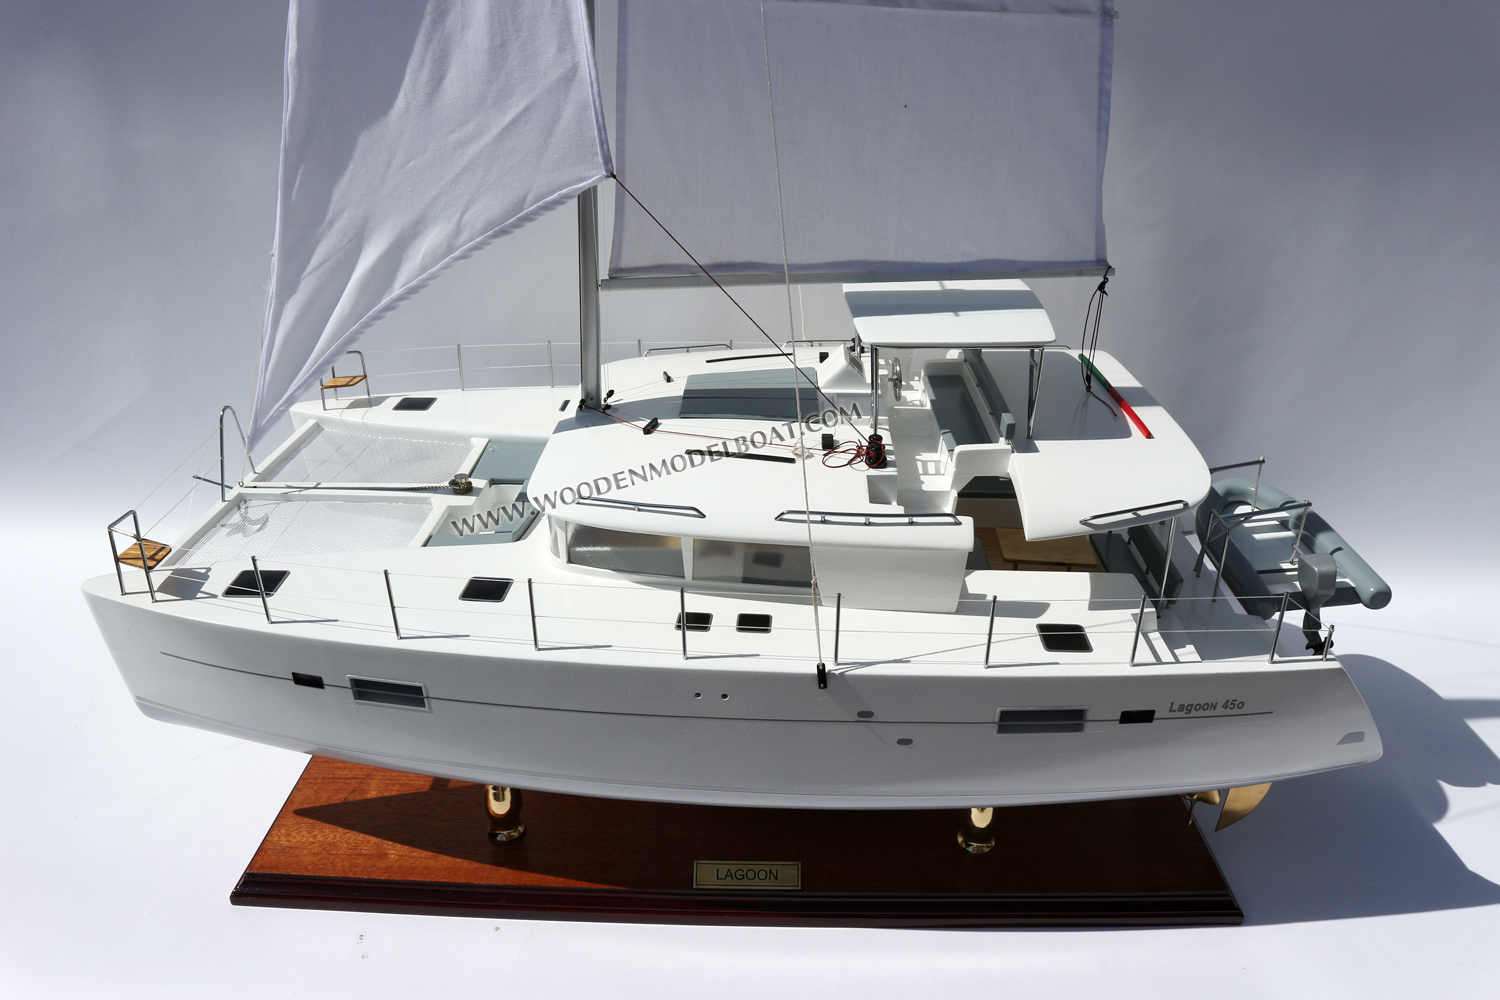 LAGOON 450F CATAMARAN Catamaran Model